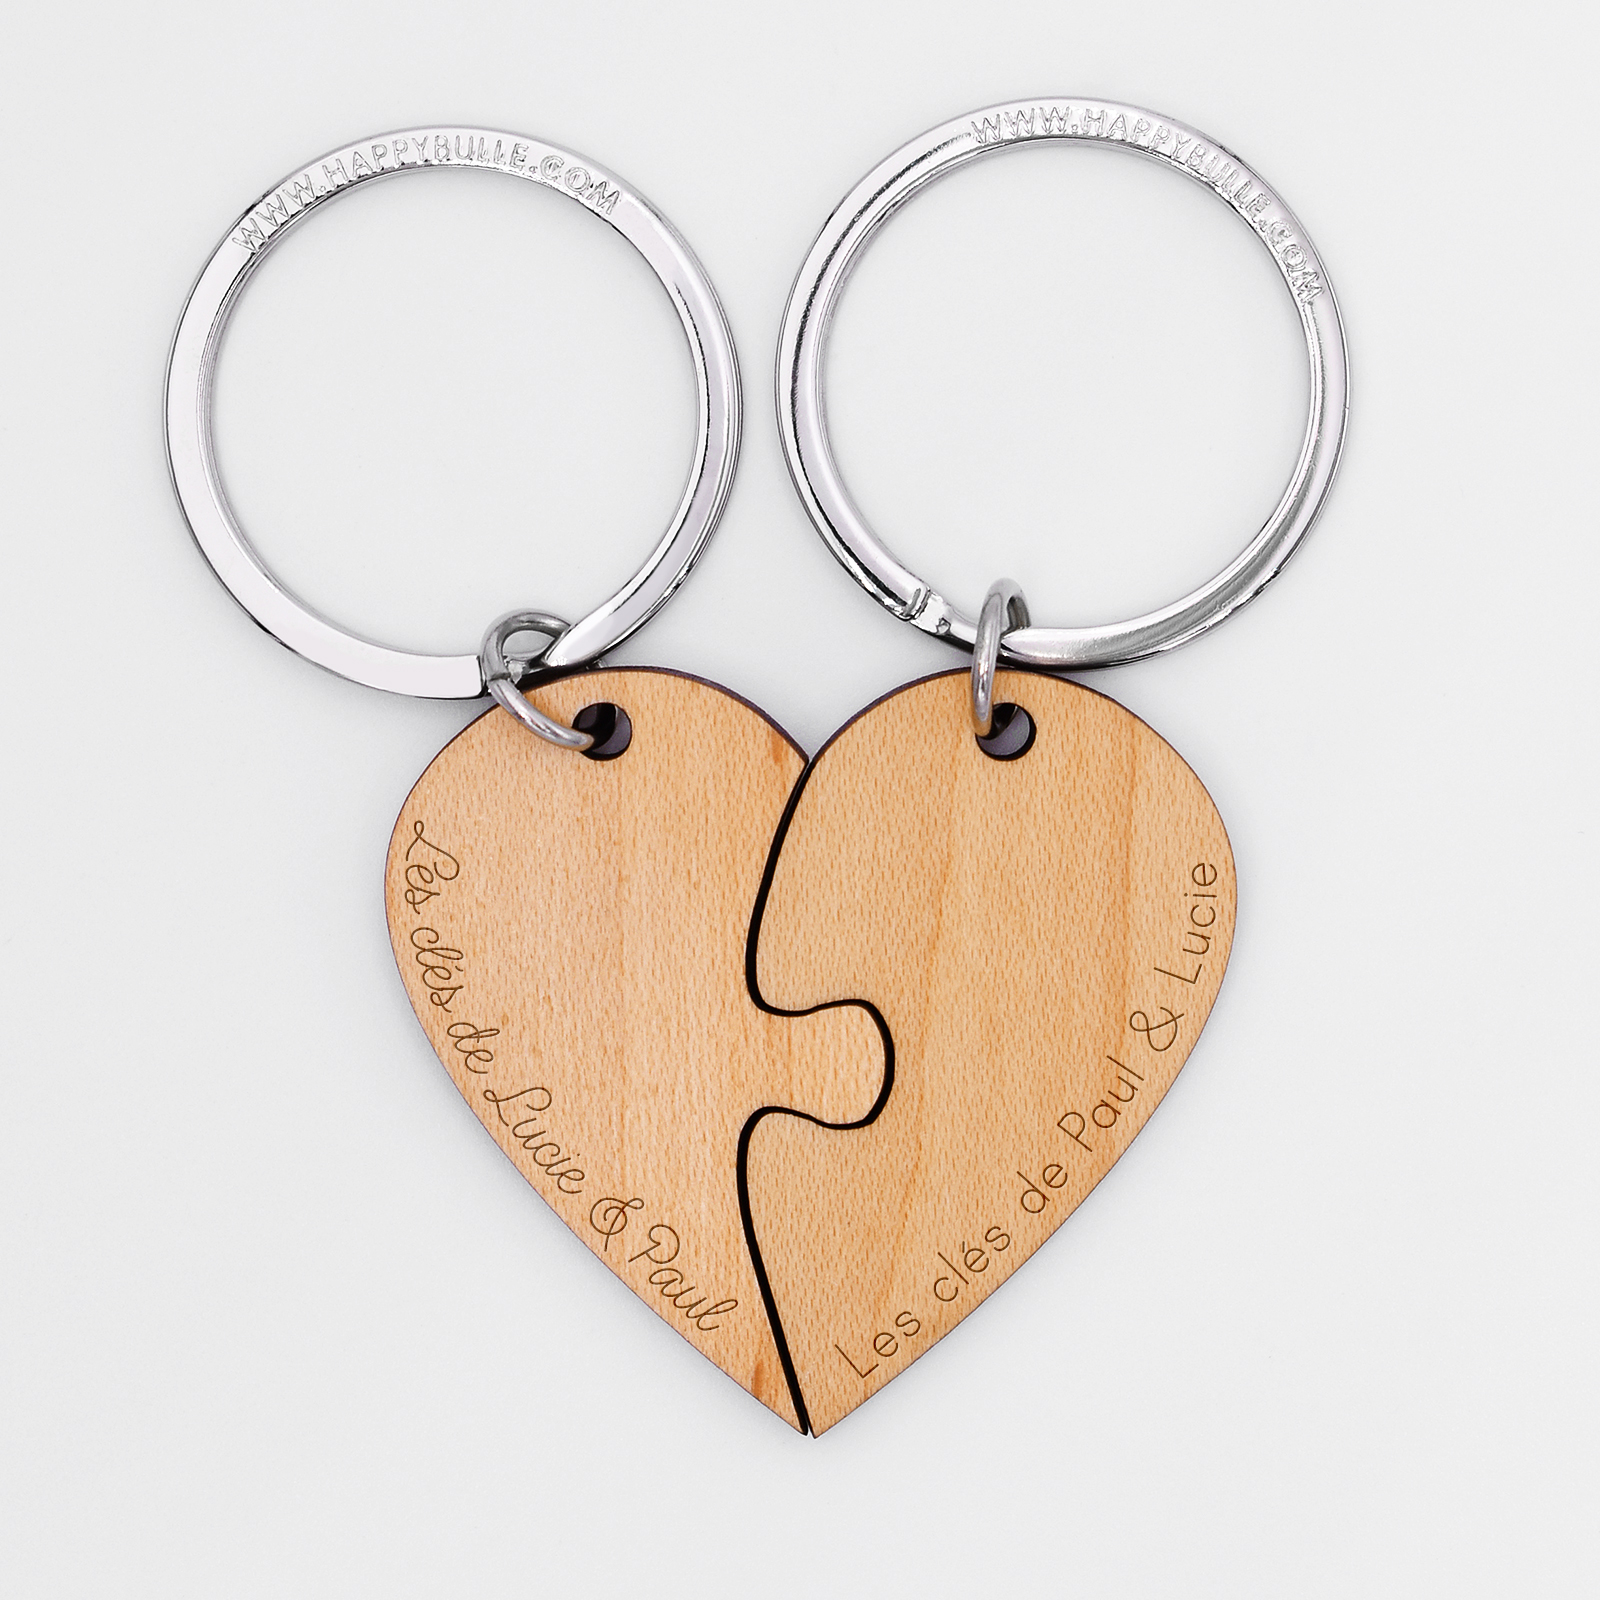 Pair of Personalised Engraved Wood Keyrings- Interlocking Hearts